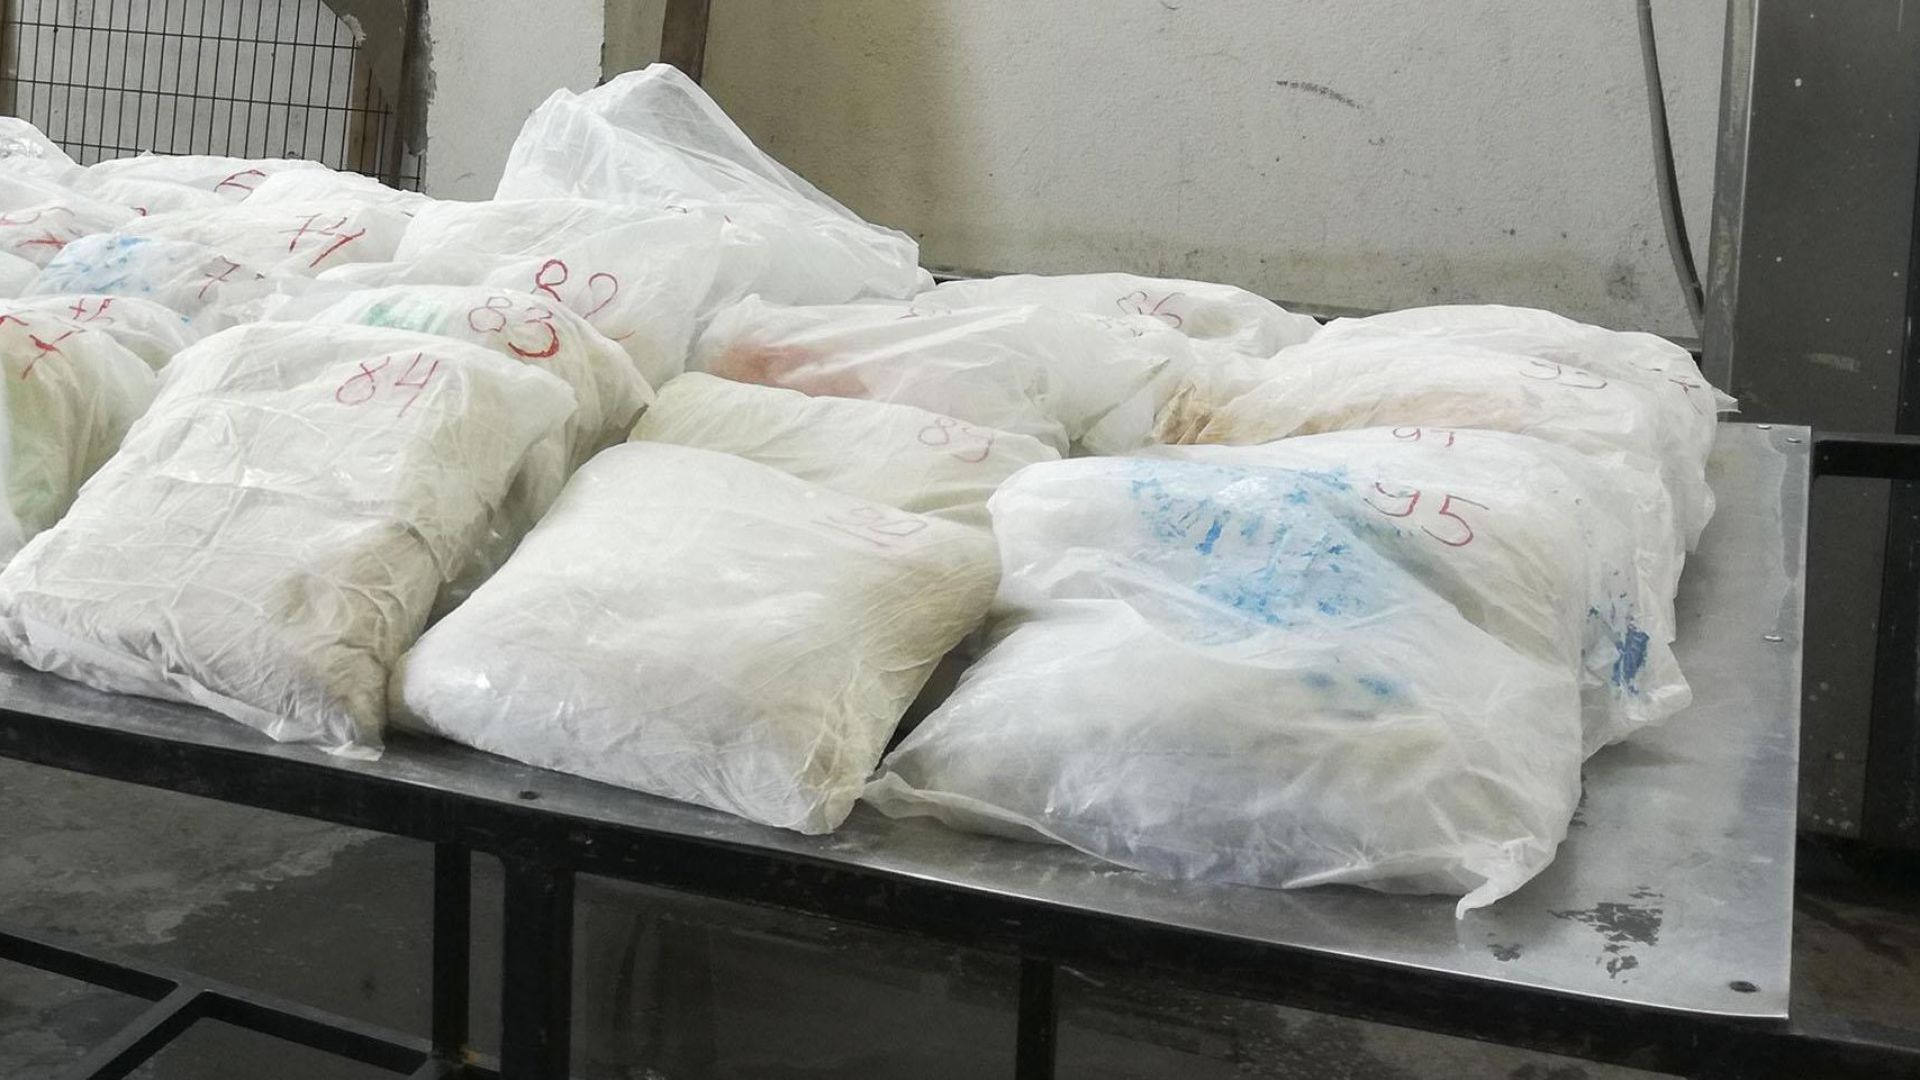 Над 7 години затвор за турчин, пренесъл през границата ни 50 кг хероин 